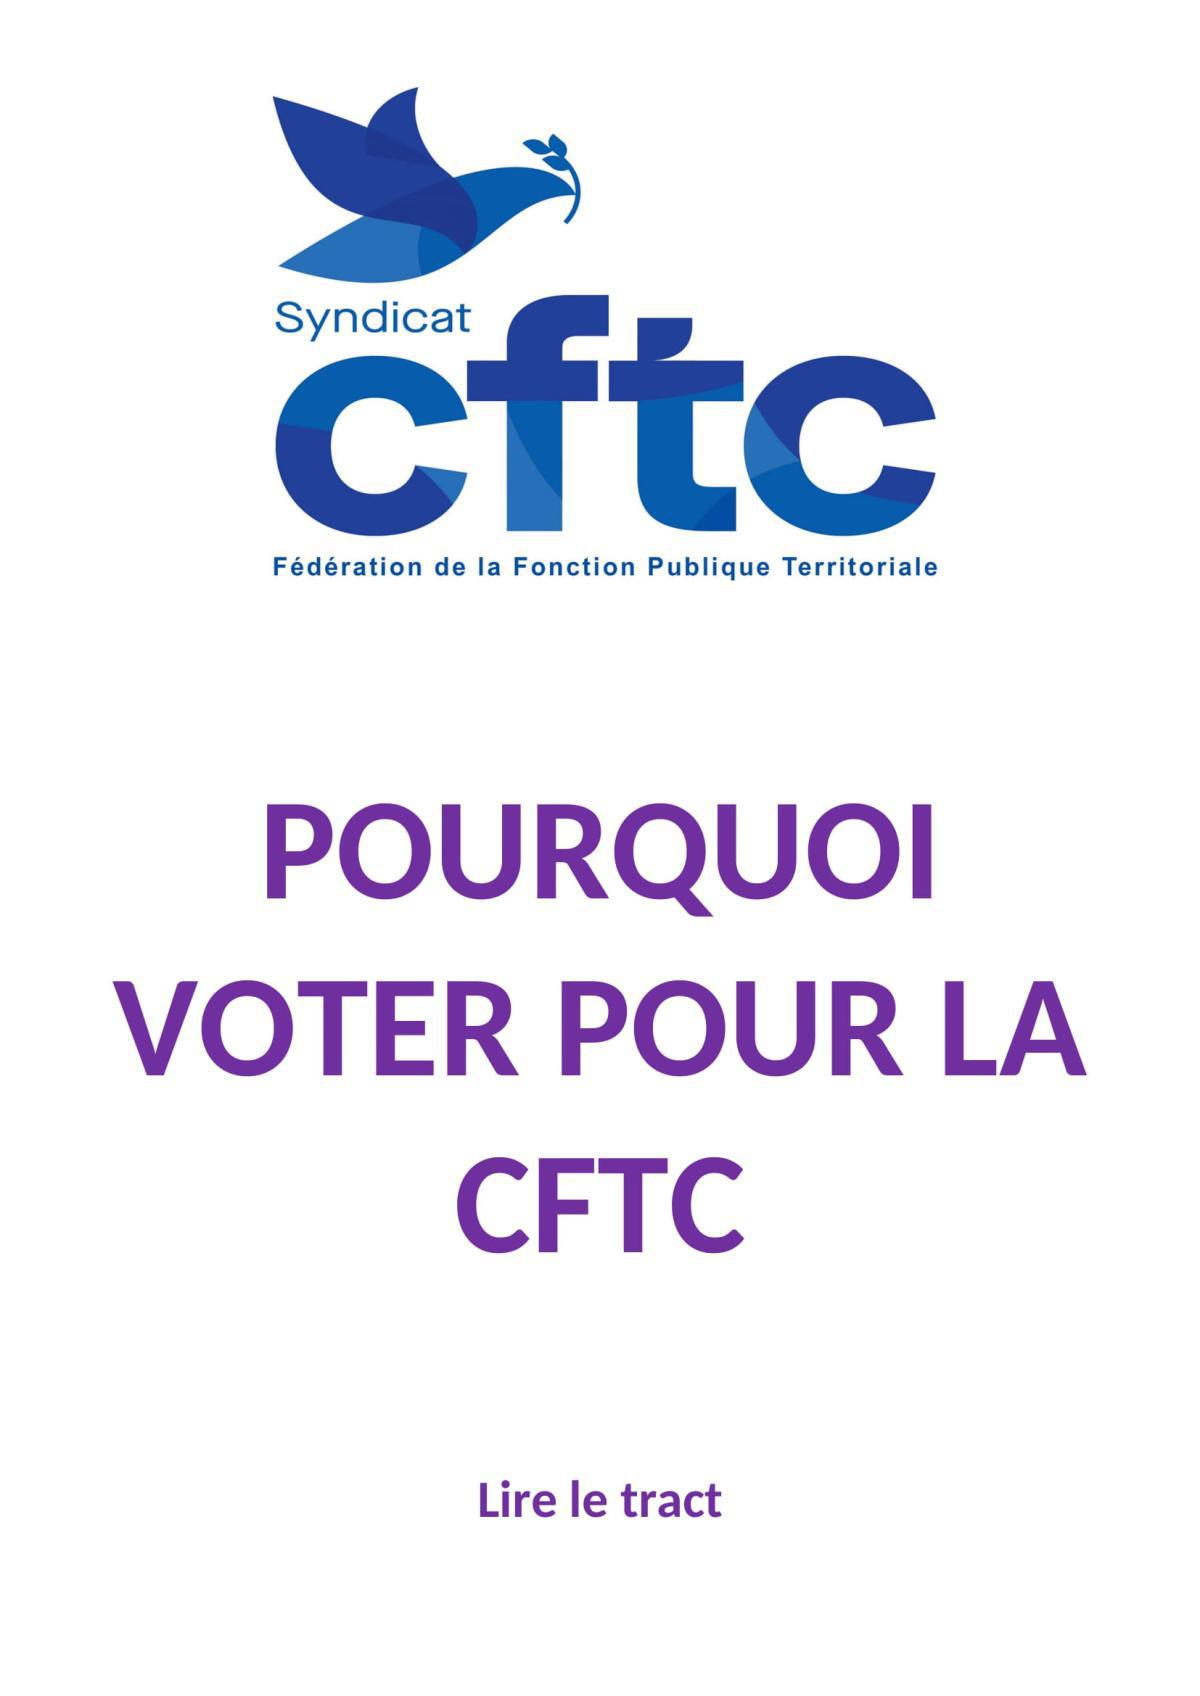 POURQUOI VOTER POUR LA CFTC lors des prochaines élections professionnelles